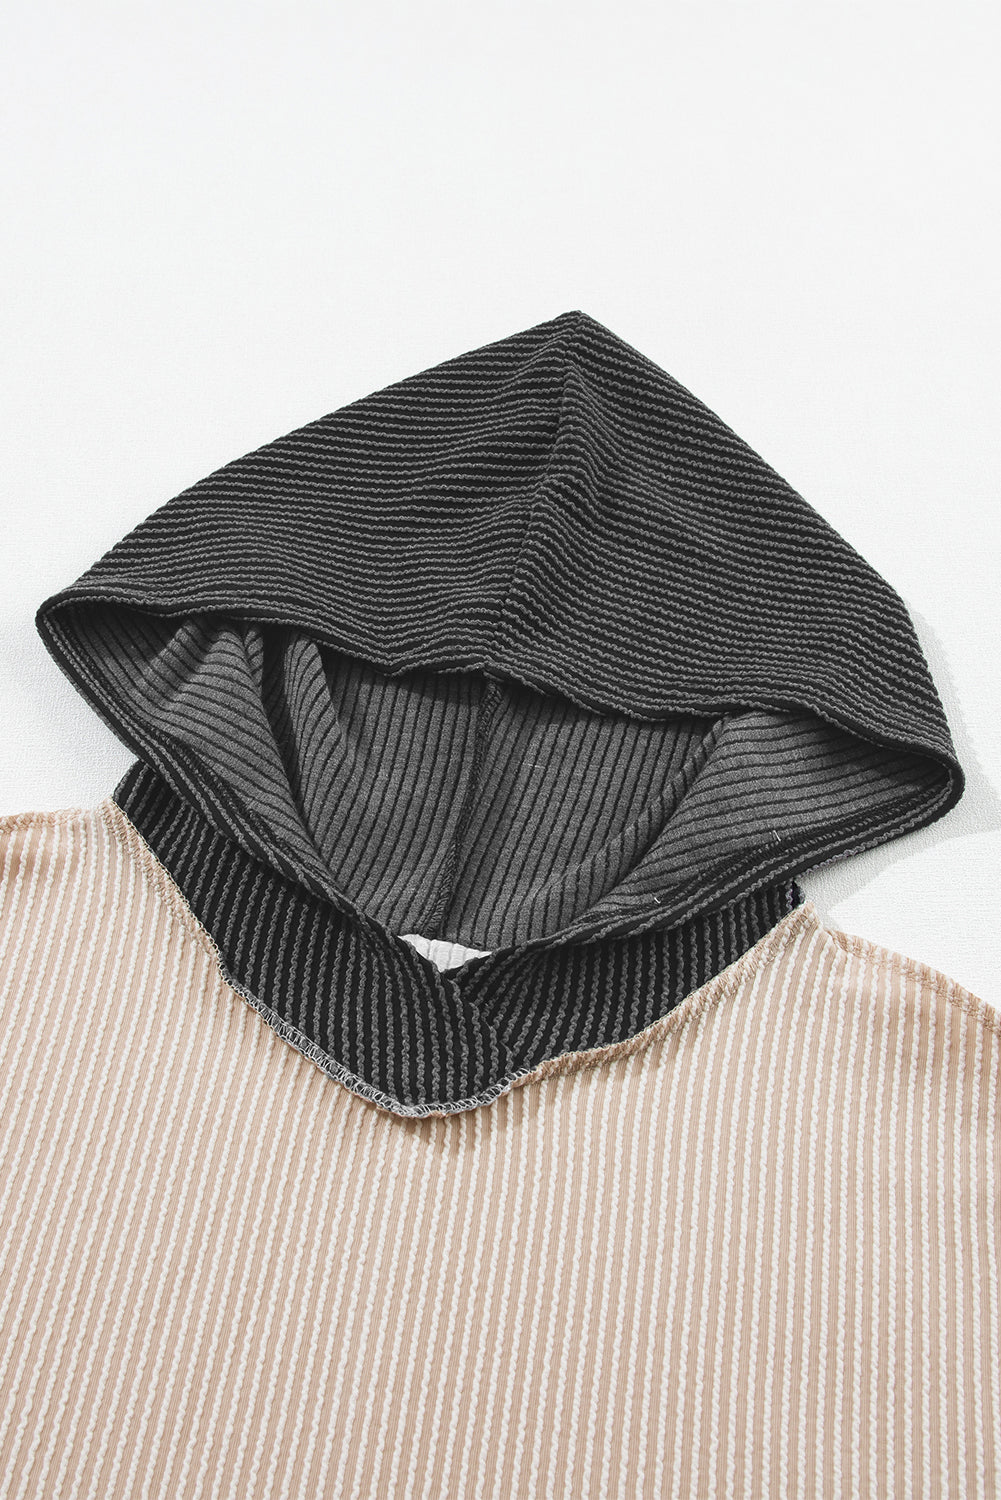 Pulover s kapuco z visoko nizko teksturo v dimno sivi barvi